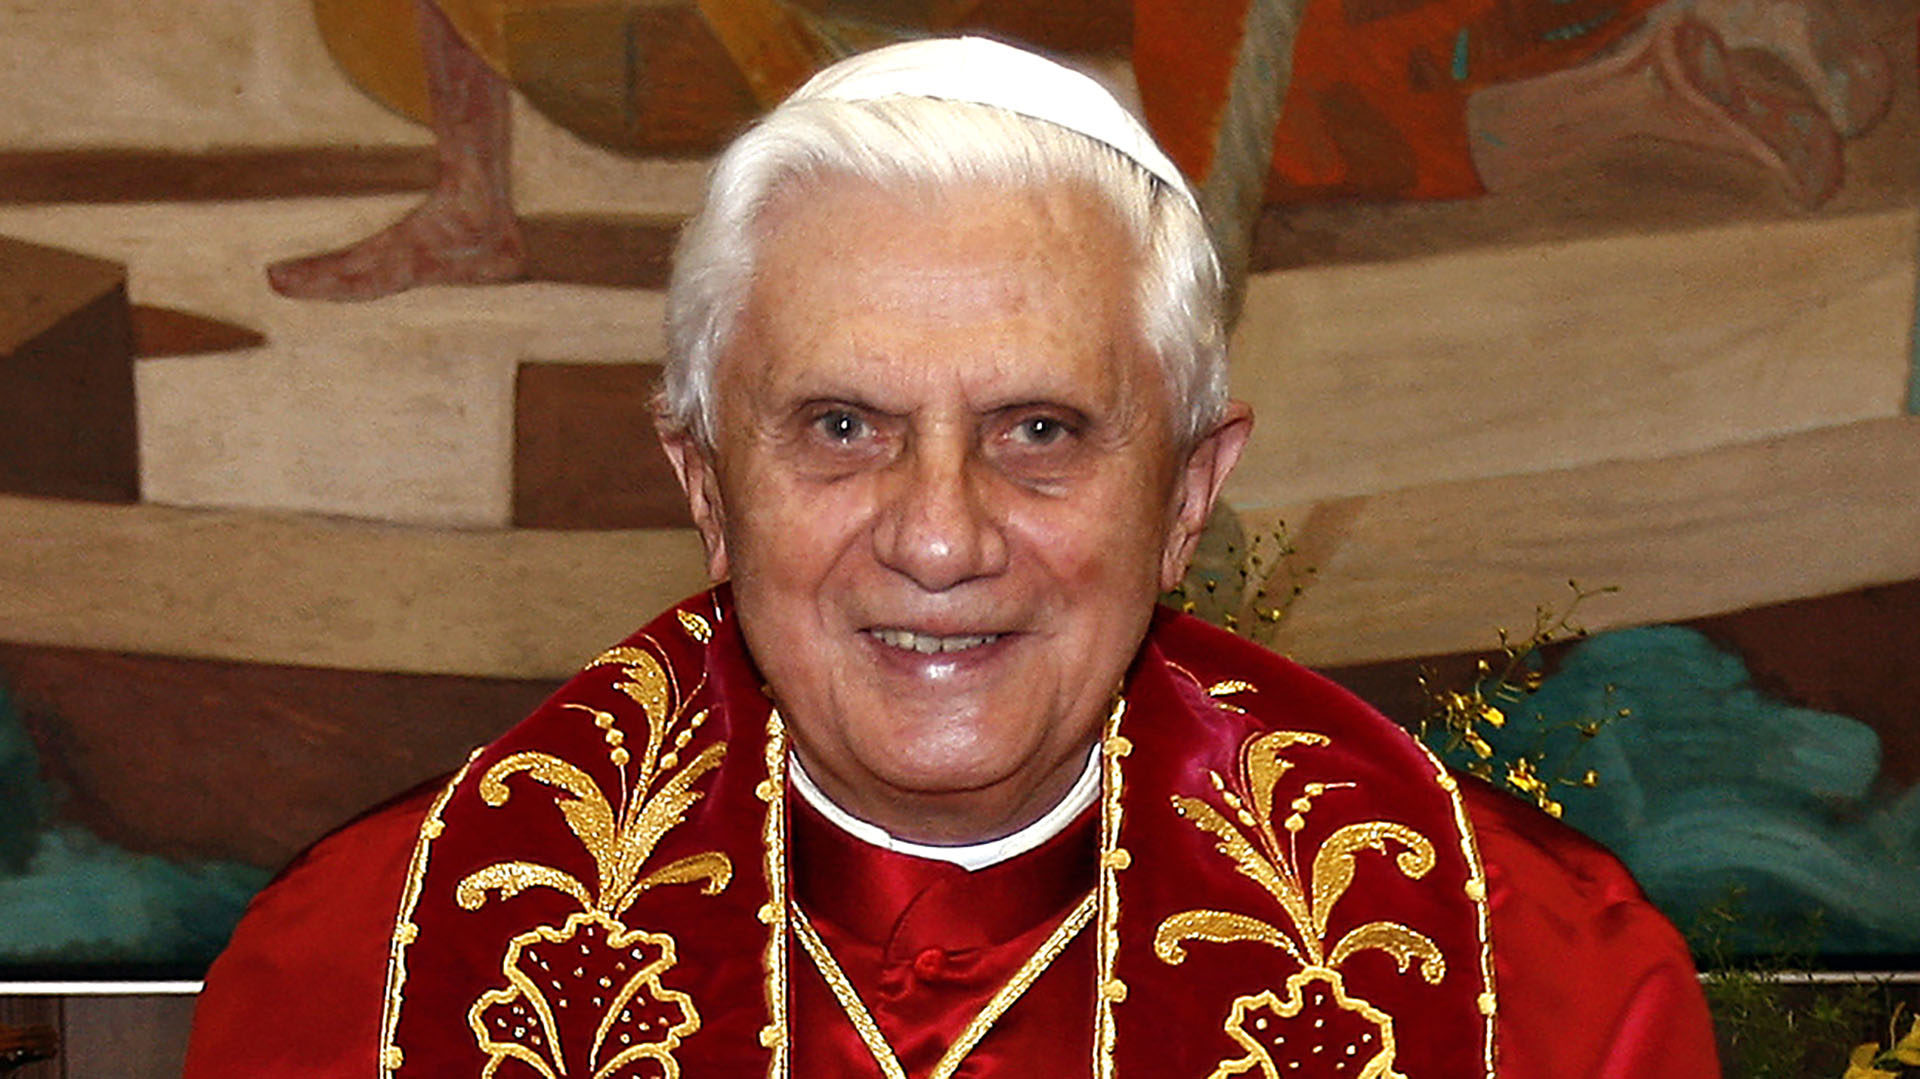 La biographie de Benoît XVI, paru en Italie le 30 août 2016, est signée par l’historien et théologien Elio Guerrerio et préfacée par le pape François. (Wikimedia Commons/Fabio Pozzebom/CC BY 3.0 BR)